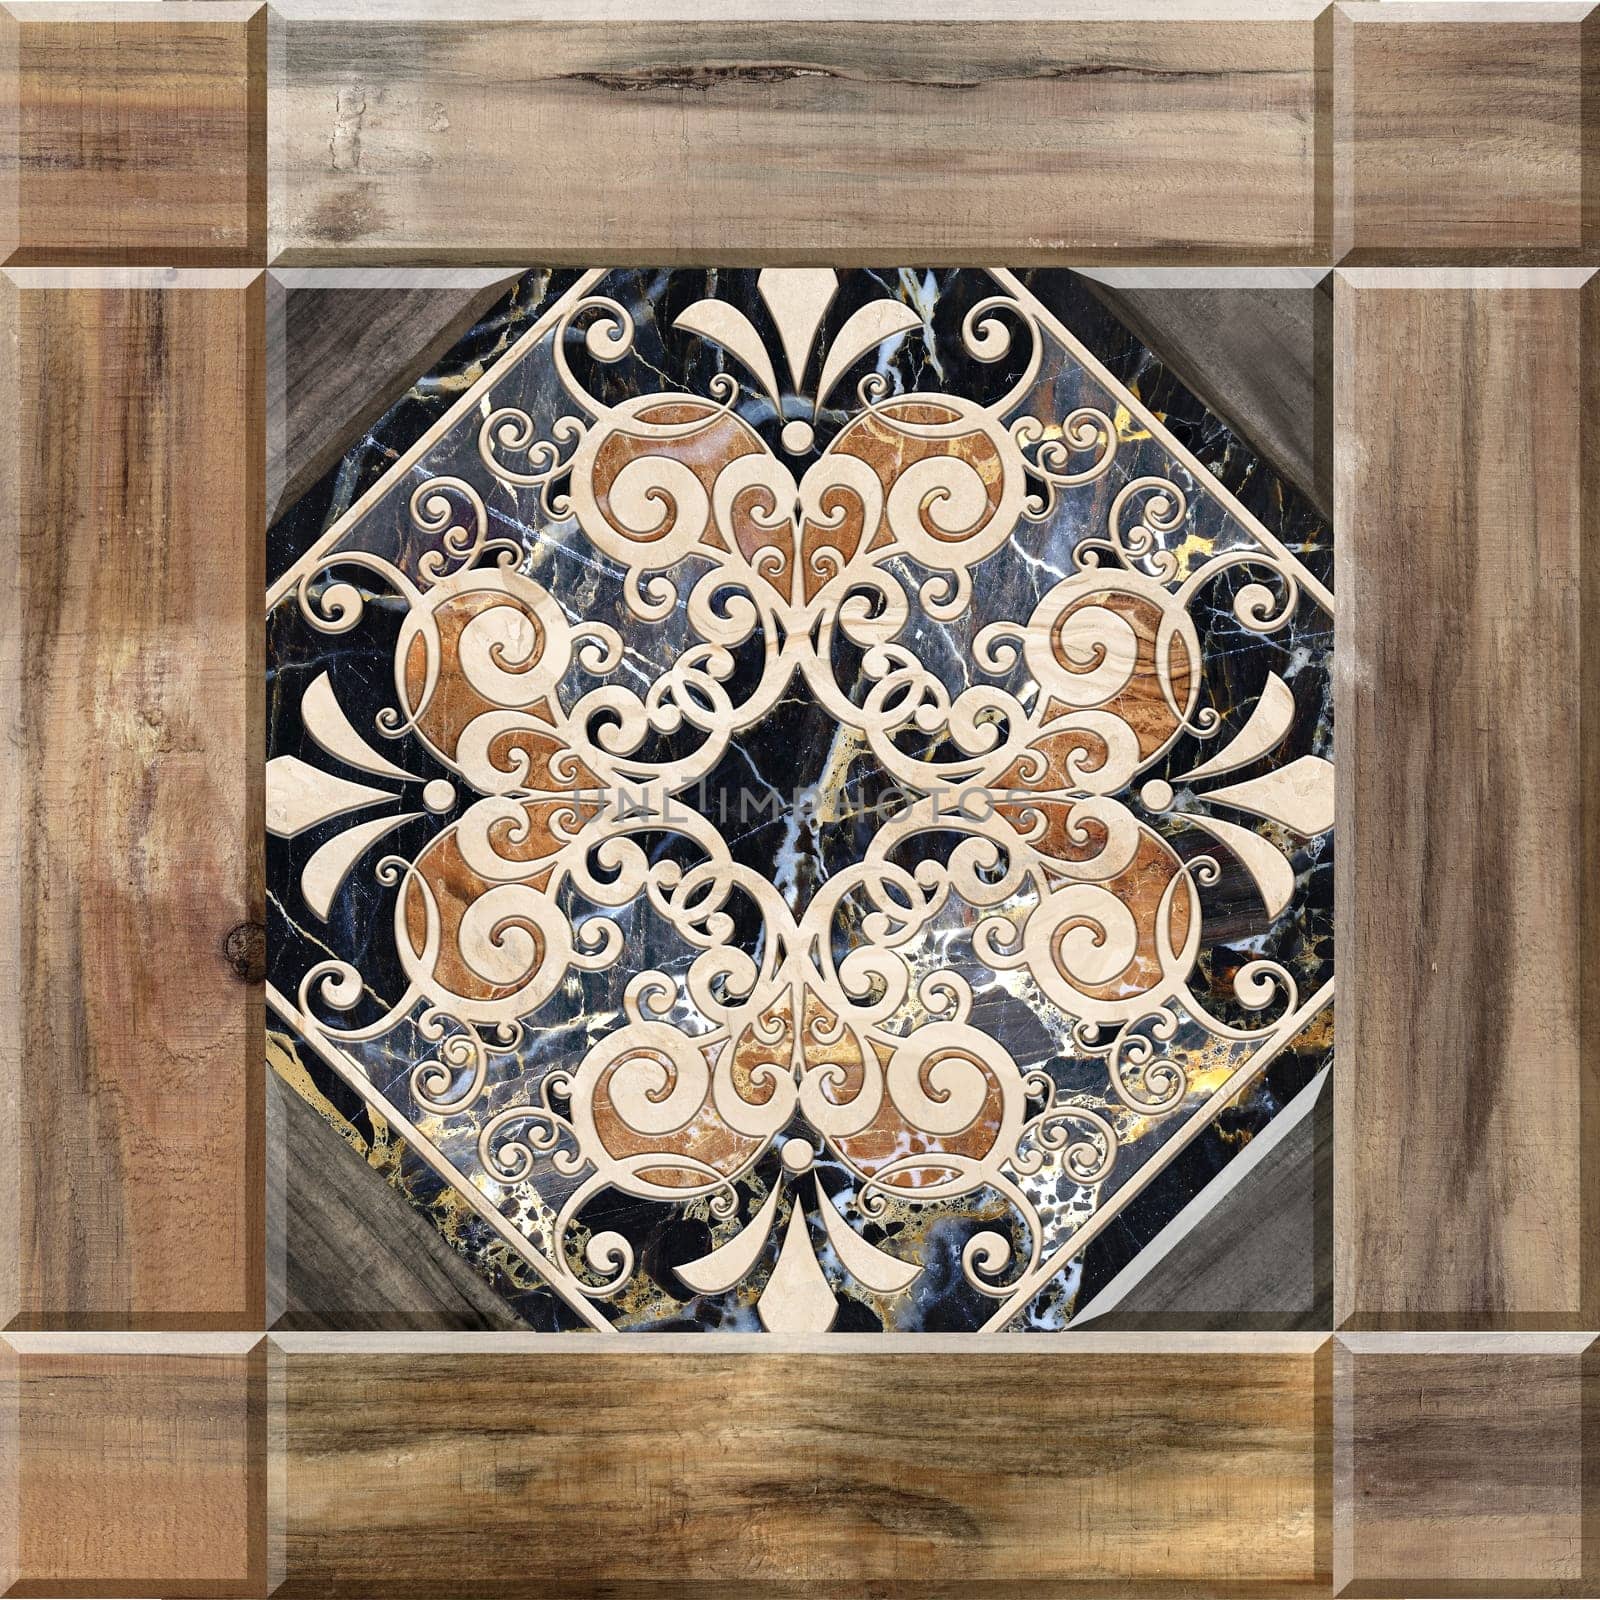 Digital tiles design. Abstract damask patchwork pattern Vintage tiles design by feoktistova